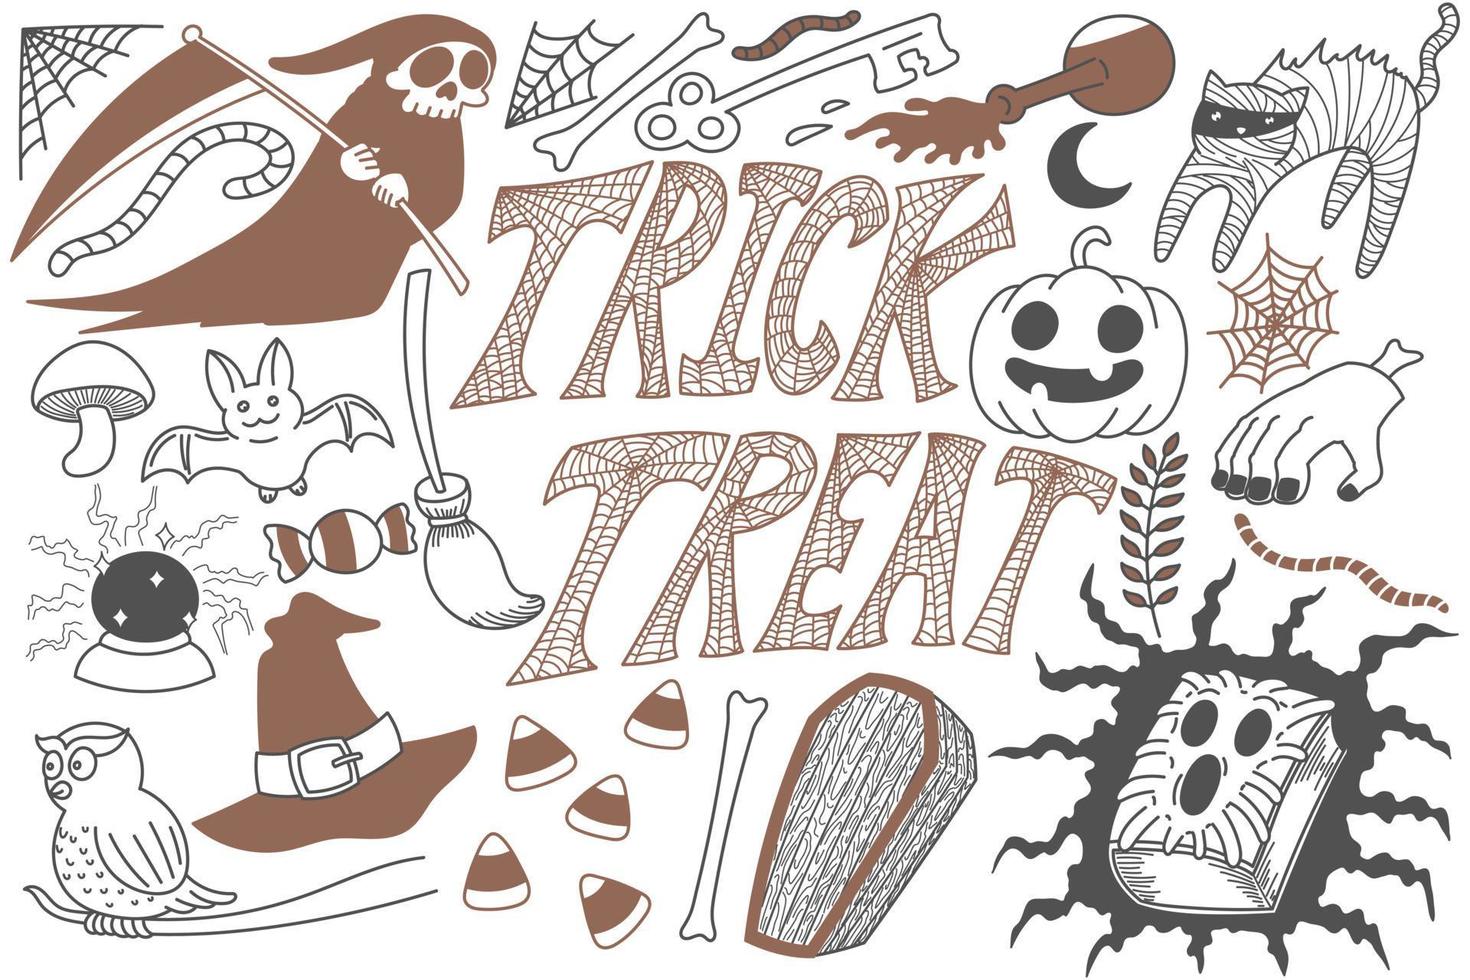 Trick or treat Halloween doodles art vector